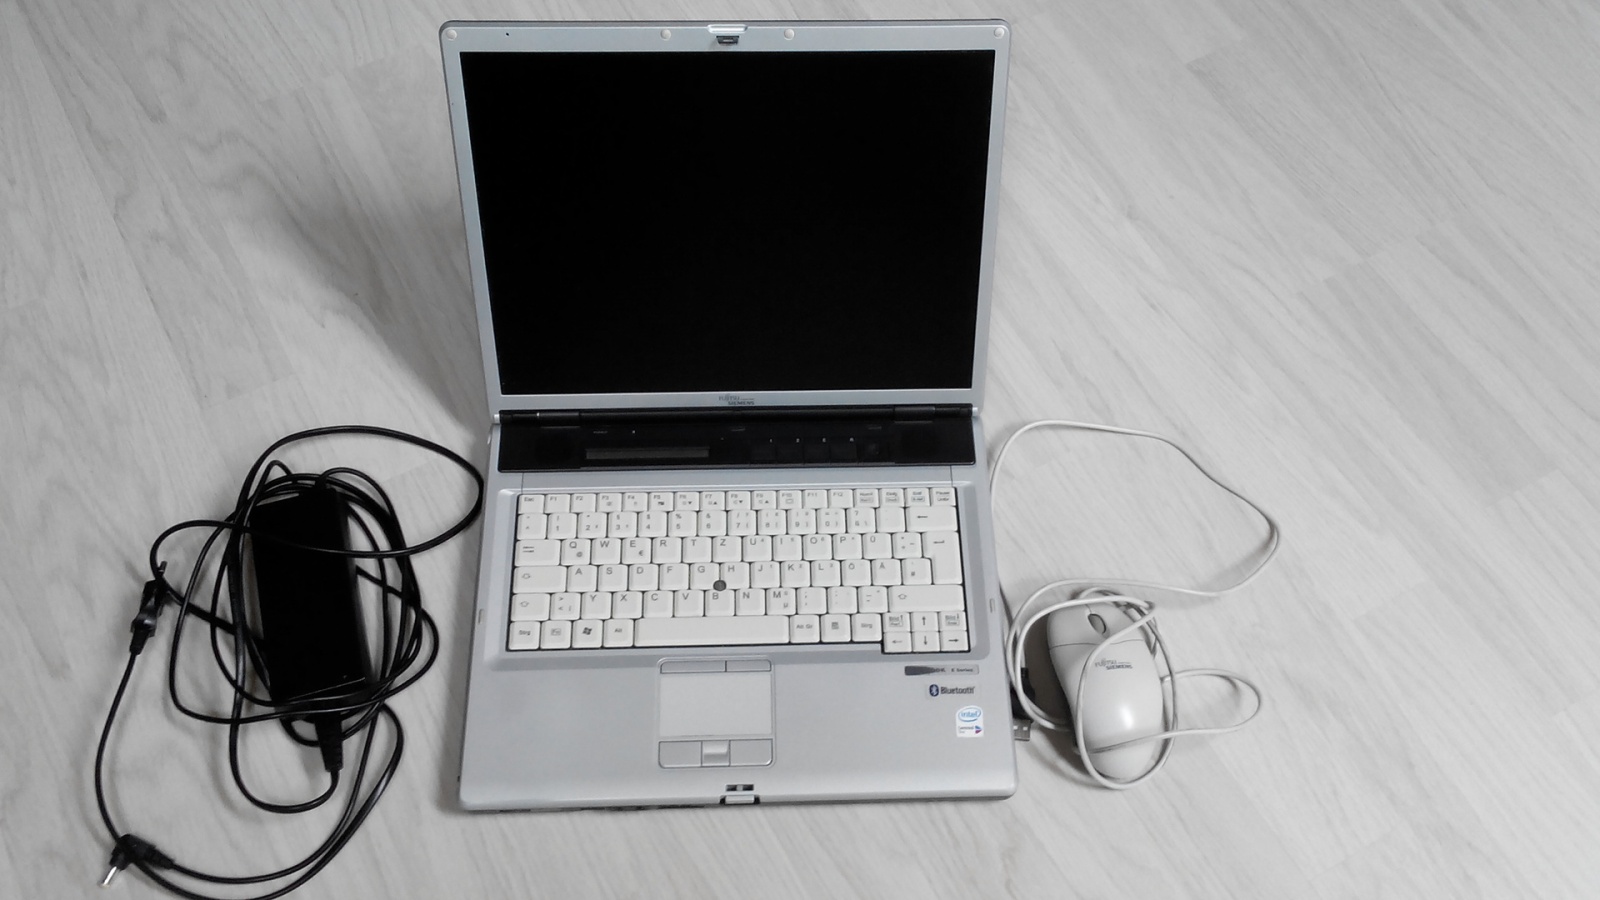 Опыт использования бизнес-ноутбука FUJITSU LIFEBOOK E746: дом вместо офиса, Linux вместо Windows - 10